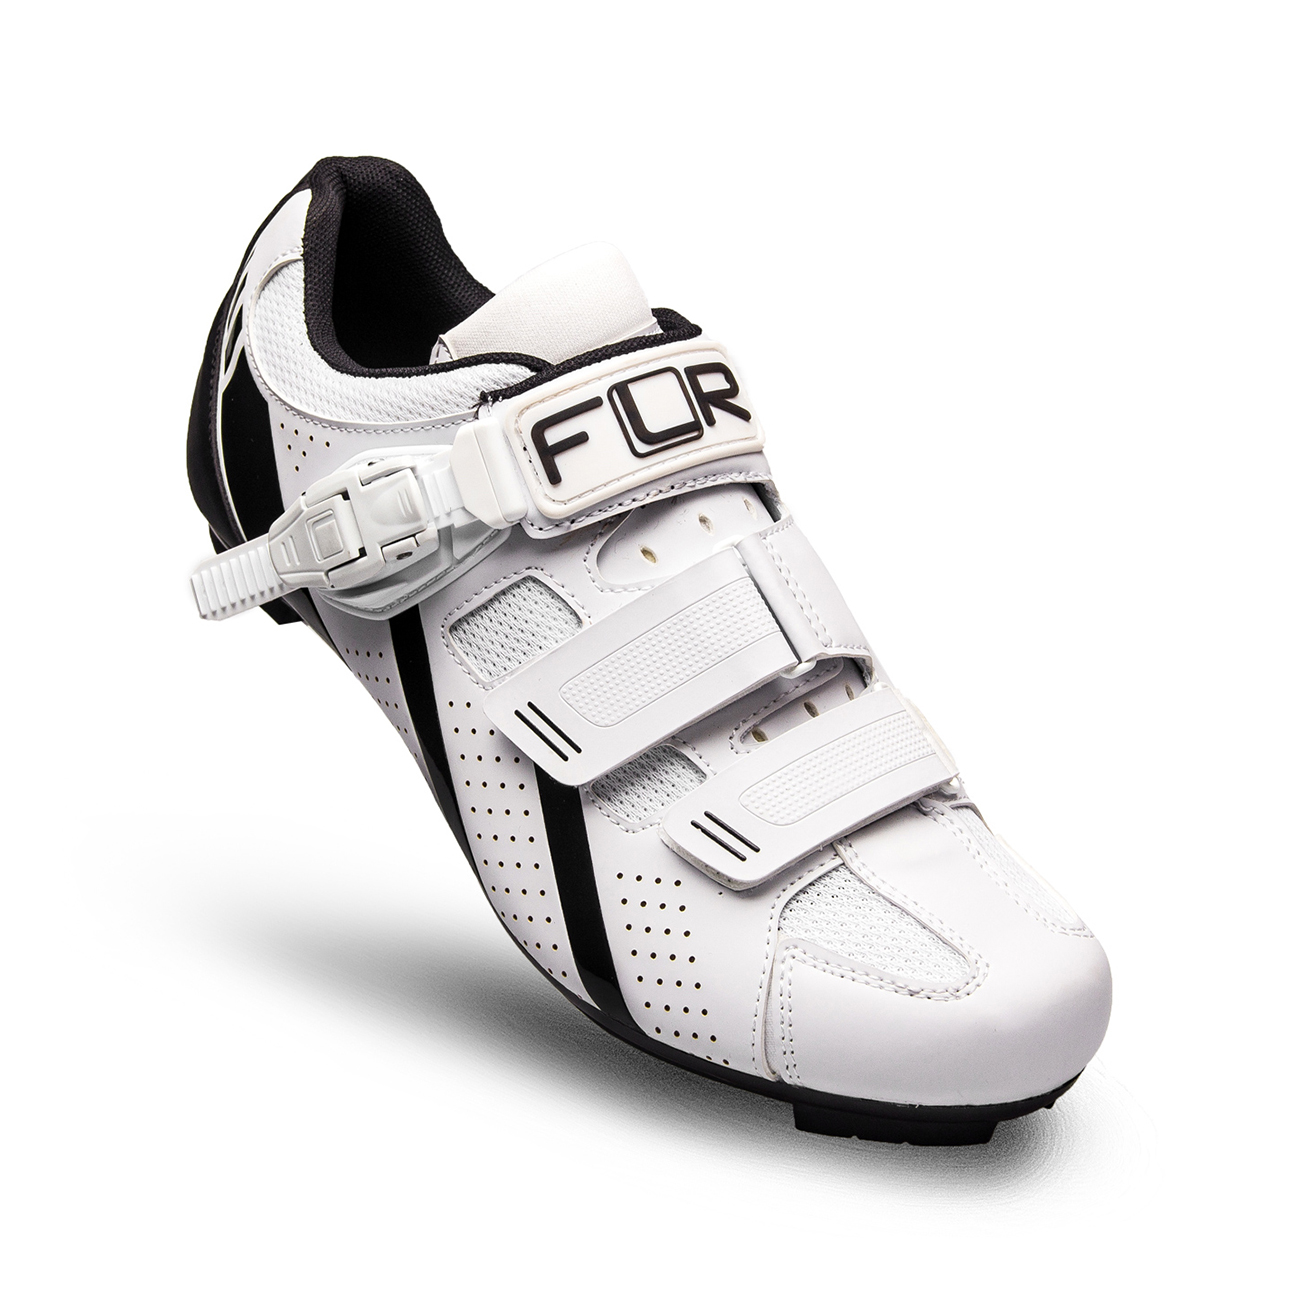 
                FLR Cyklistické tretry - F15 - čierna/biela 41
            